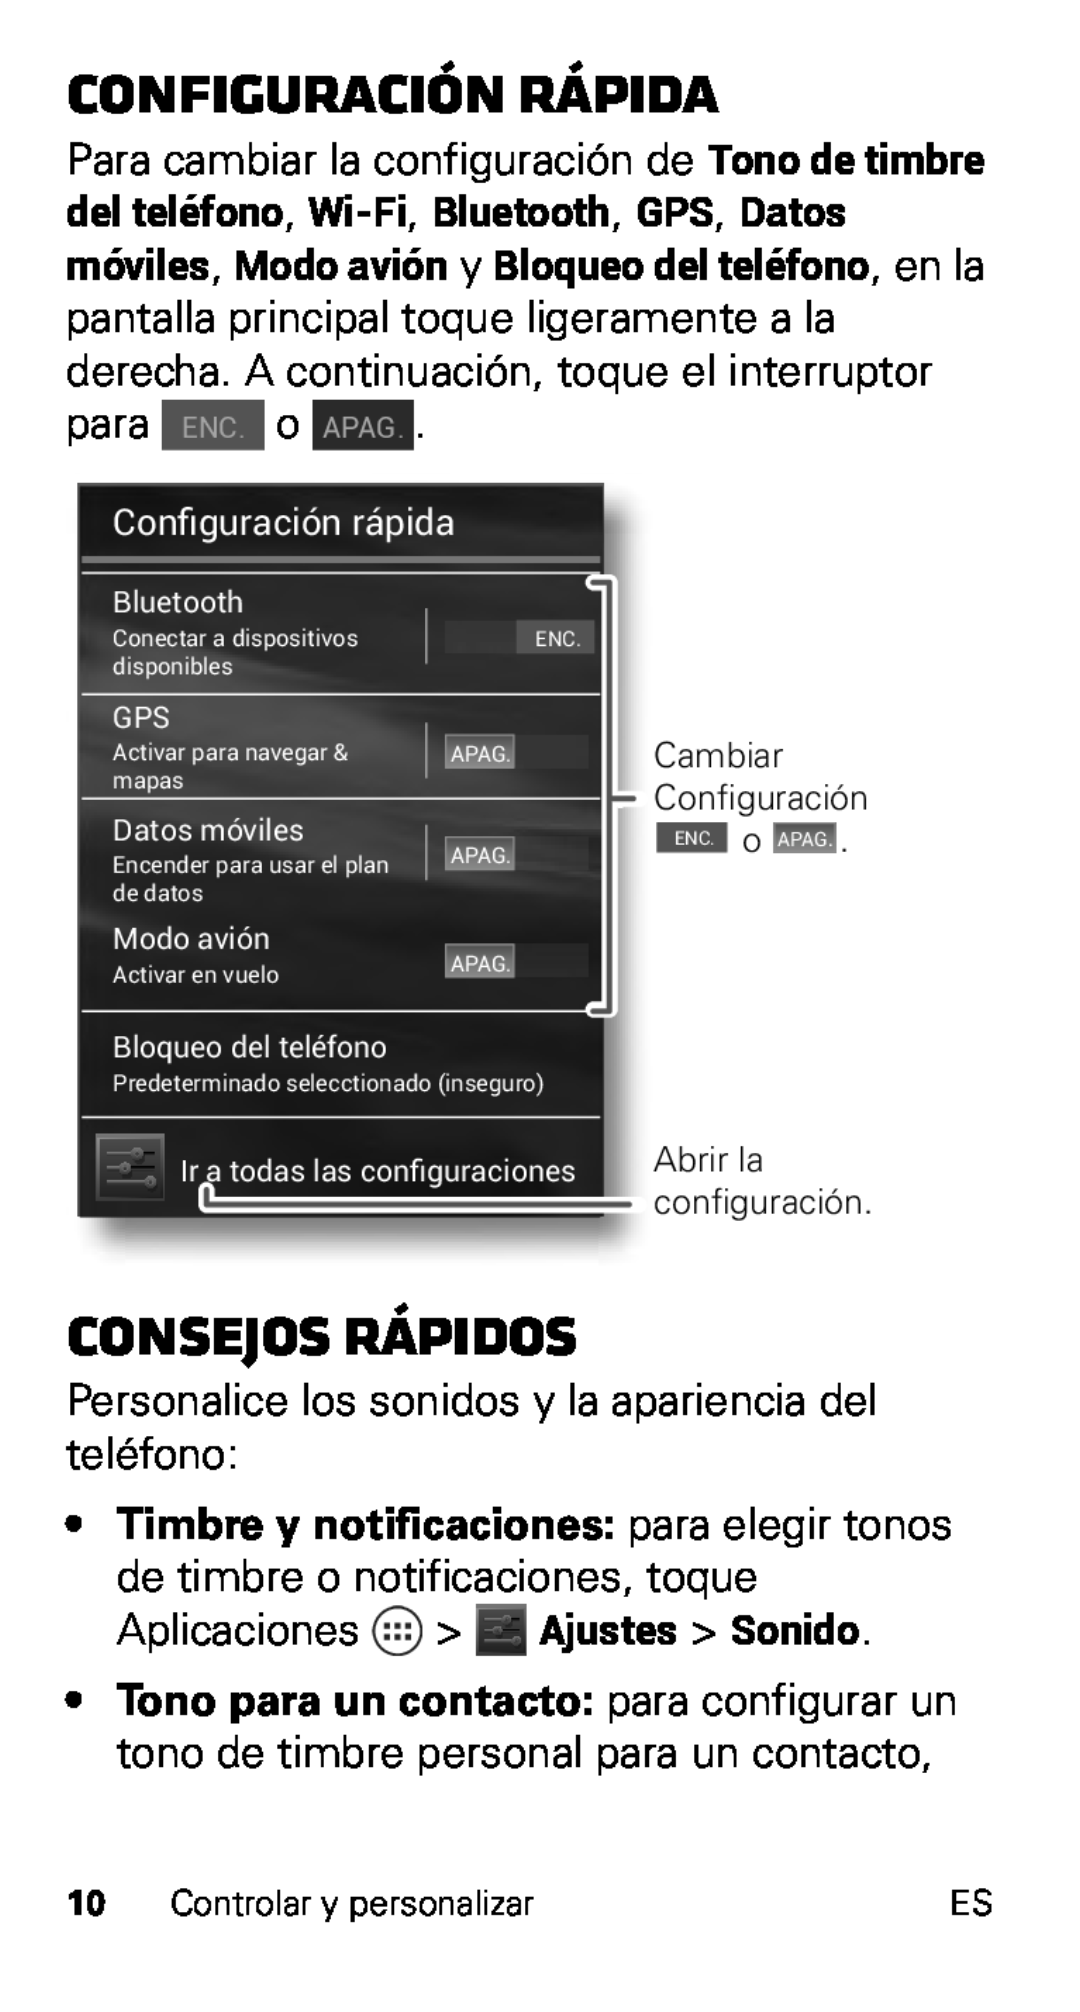 Motorola XT915, D1 Configuración rápida, consejos rápidos, Timbre y notificaciones para elegir tonos, Conﬁguración rápida 